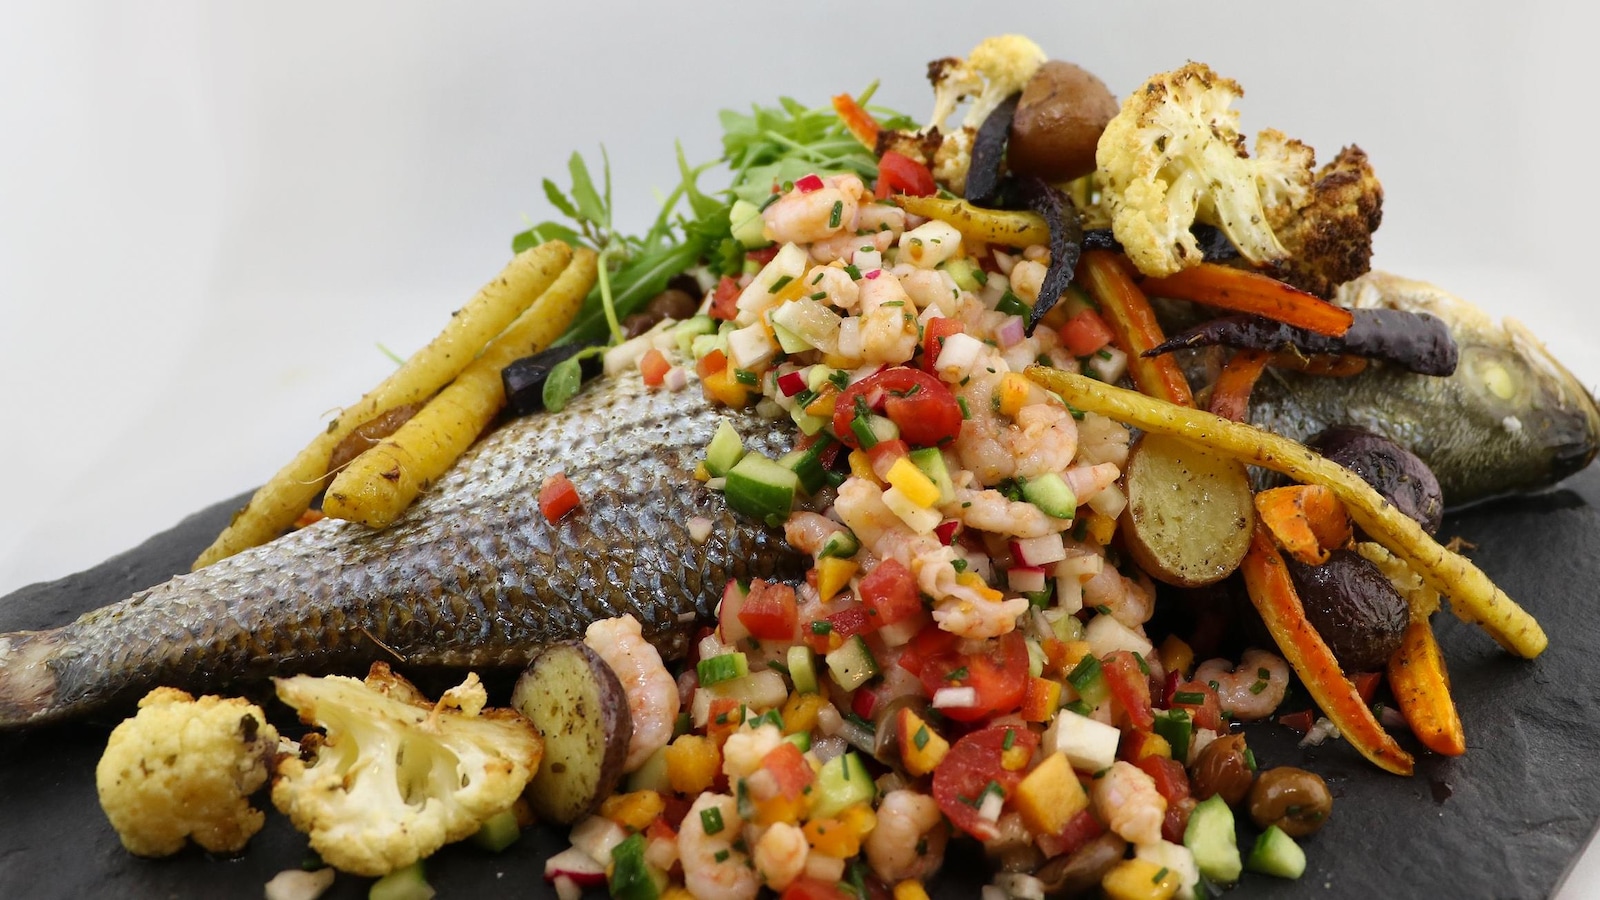 Le poisson, entier, est recouvert de crevettes nordiques et de légumes.